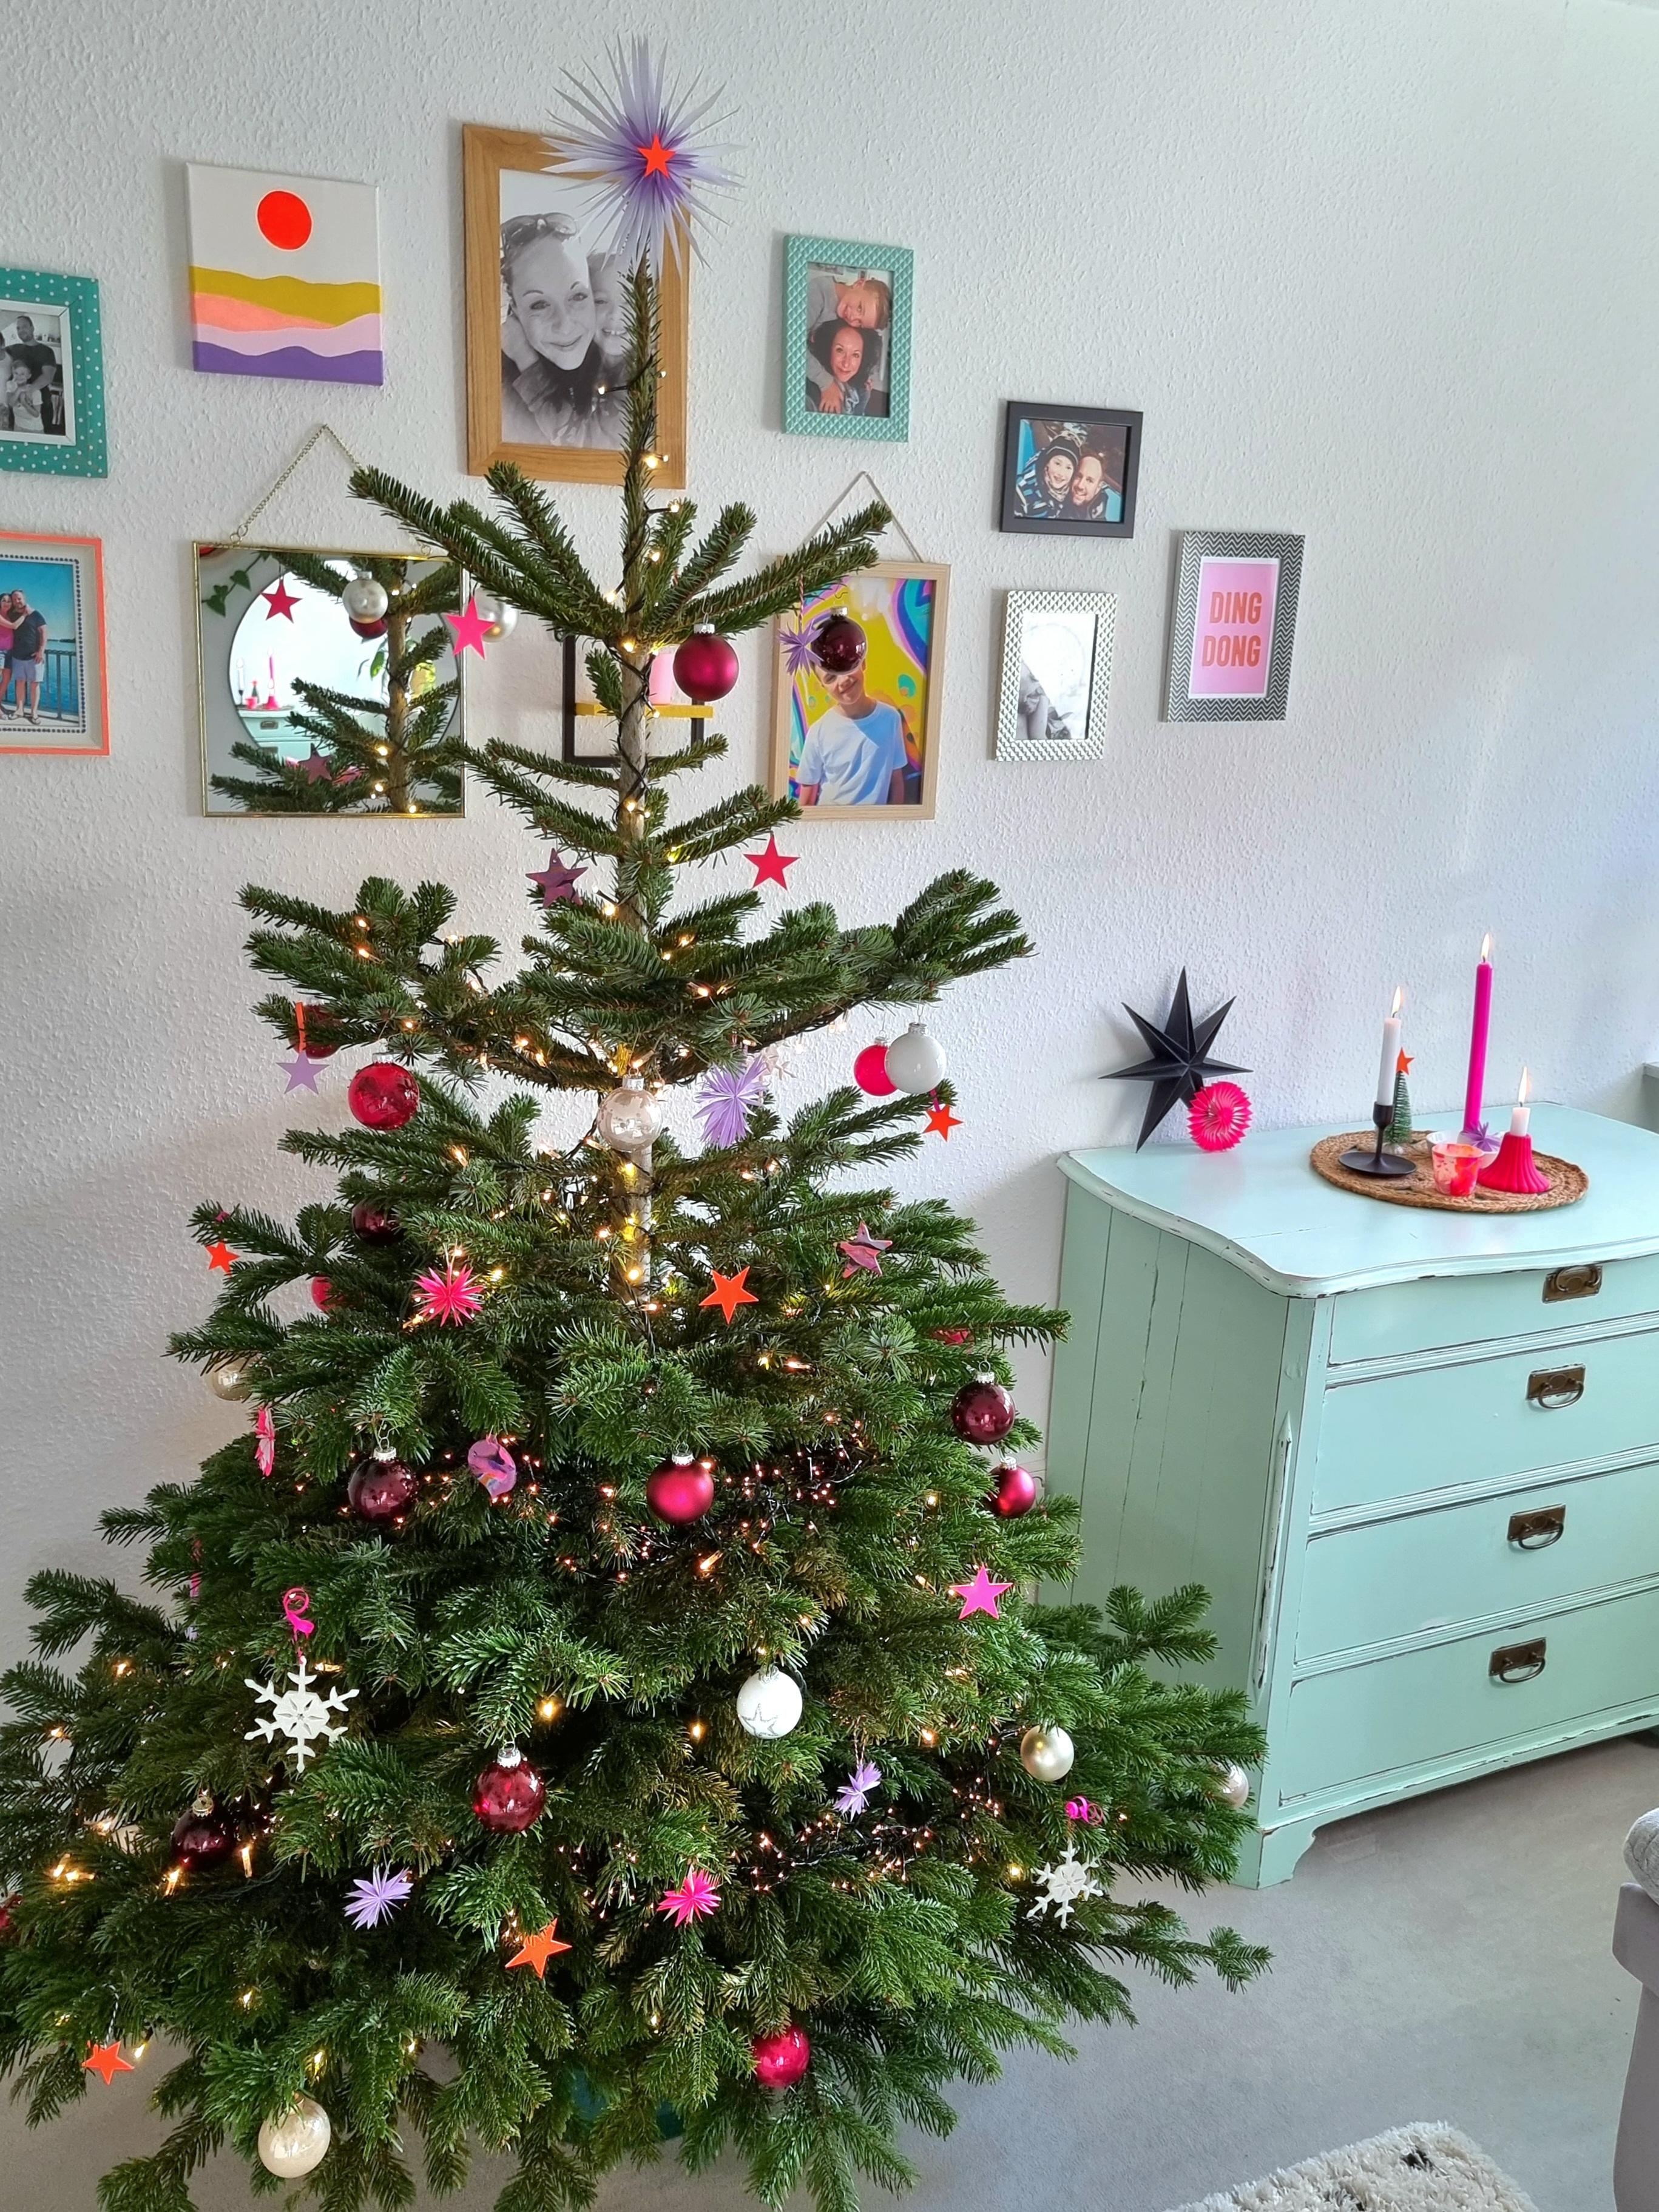 Da isser 🎄💫 #weihnachtsbaum #baumschmuck #xmas #diy #papierstern #wohnzimmer #vintage #colourfulchristmas #adventszeit